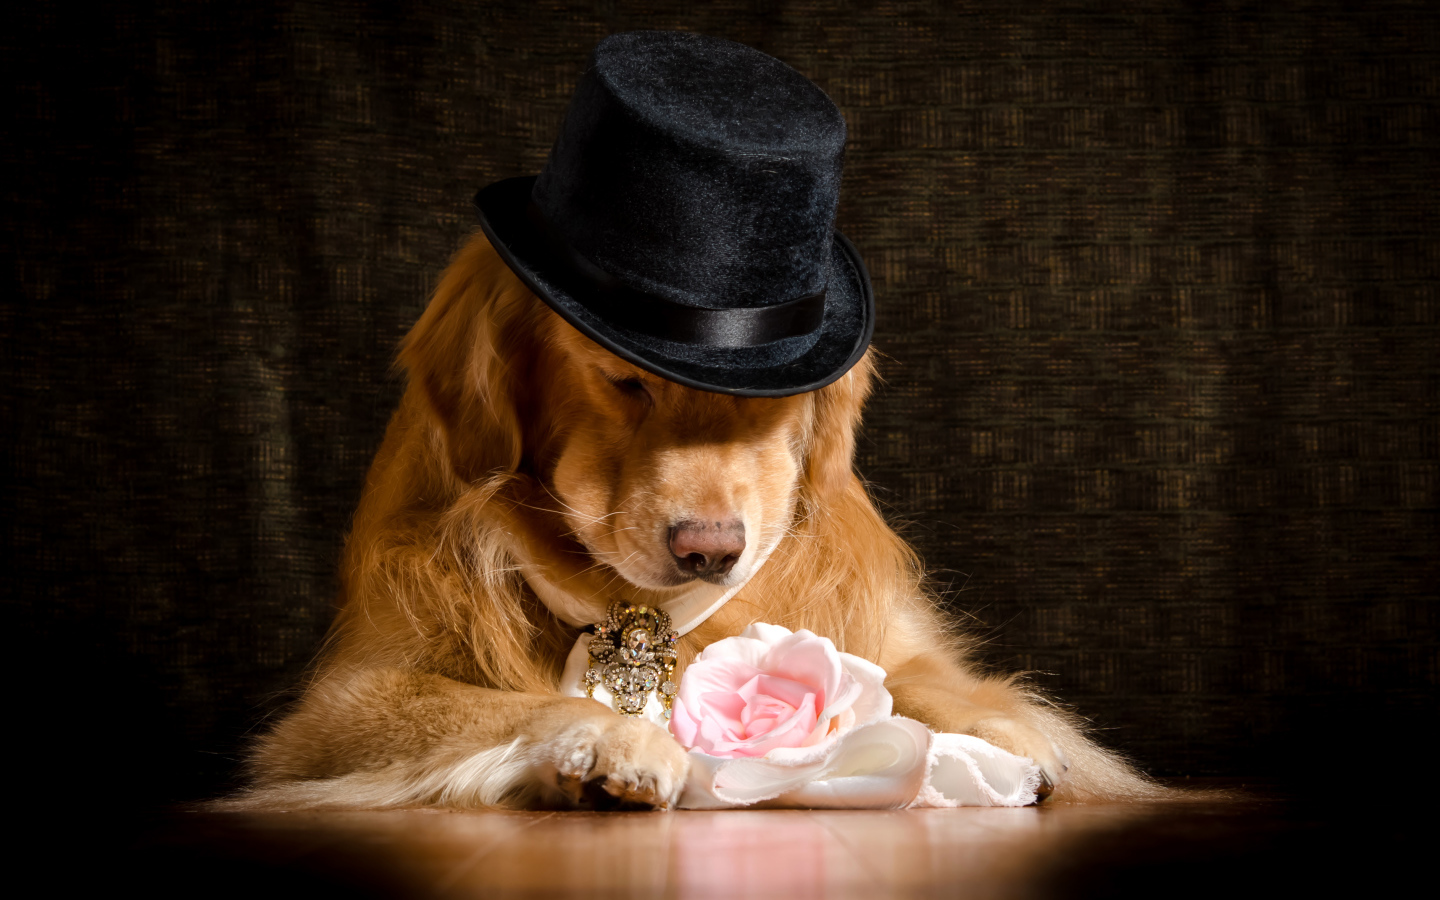 Золотистый ретривер в черной шляпе с розовой розой